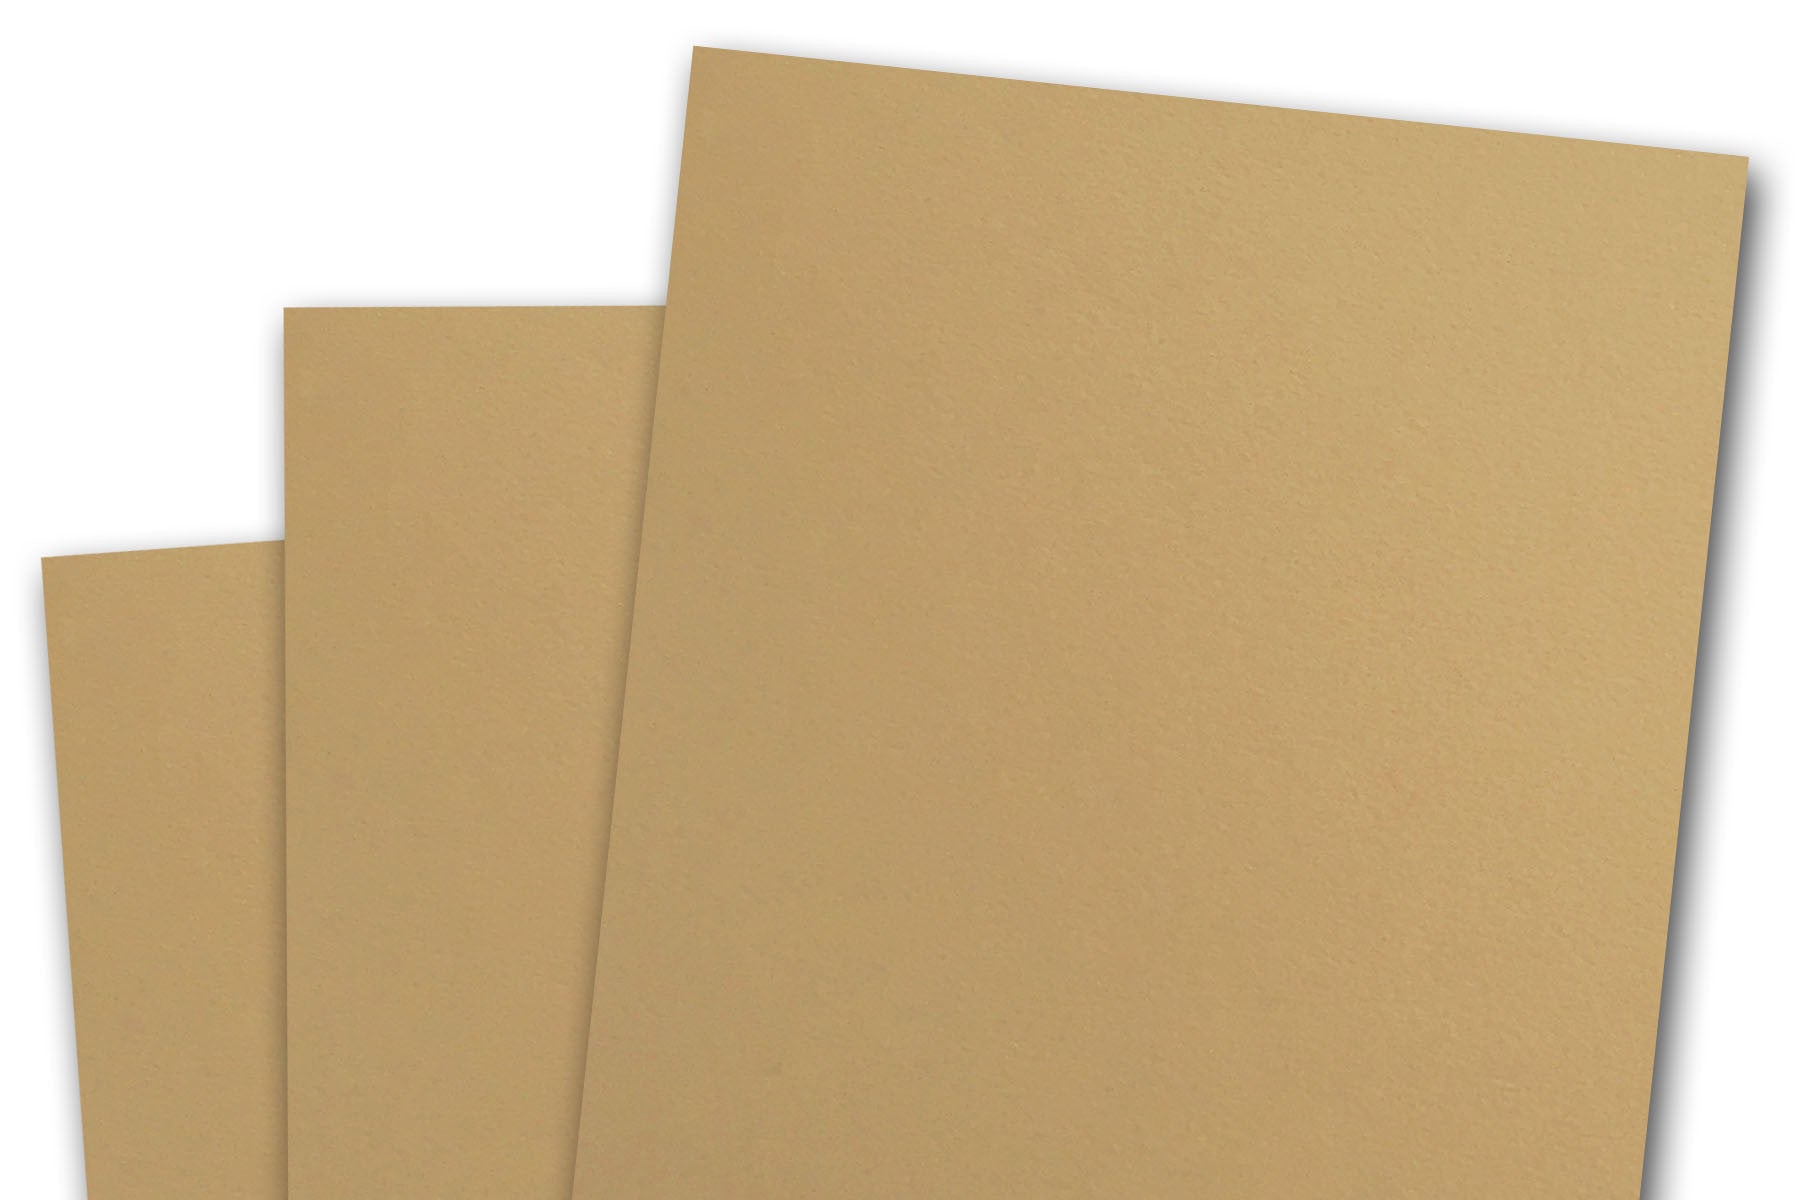 Beet/Maroon Cardstock Paper 12x12 80# lb